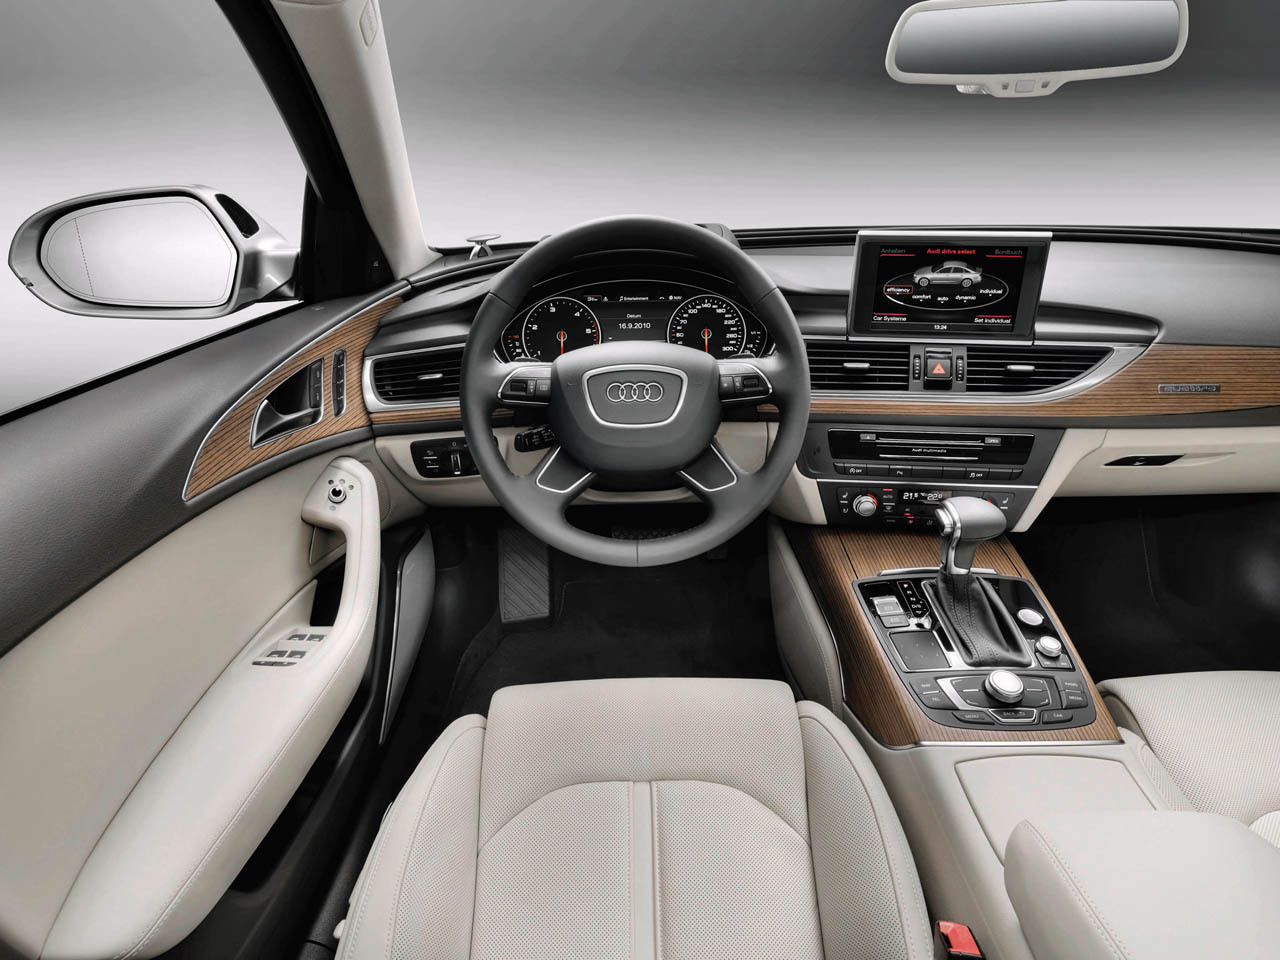 Interiorul lui Audi A6 este elegant, luxos si dinamic, fiind preluat de la Audi A7